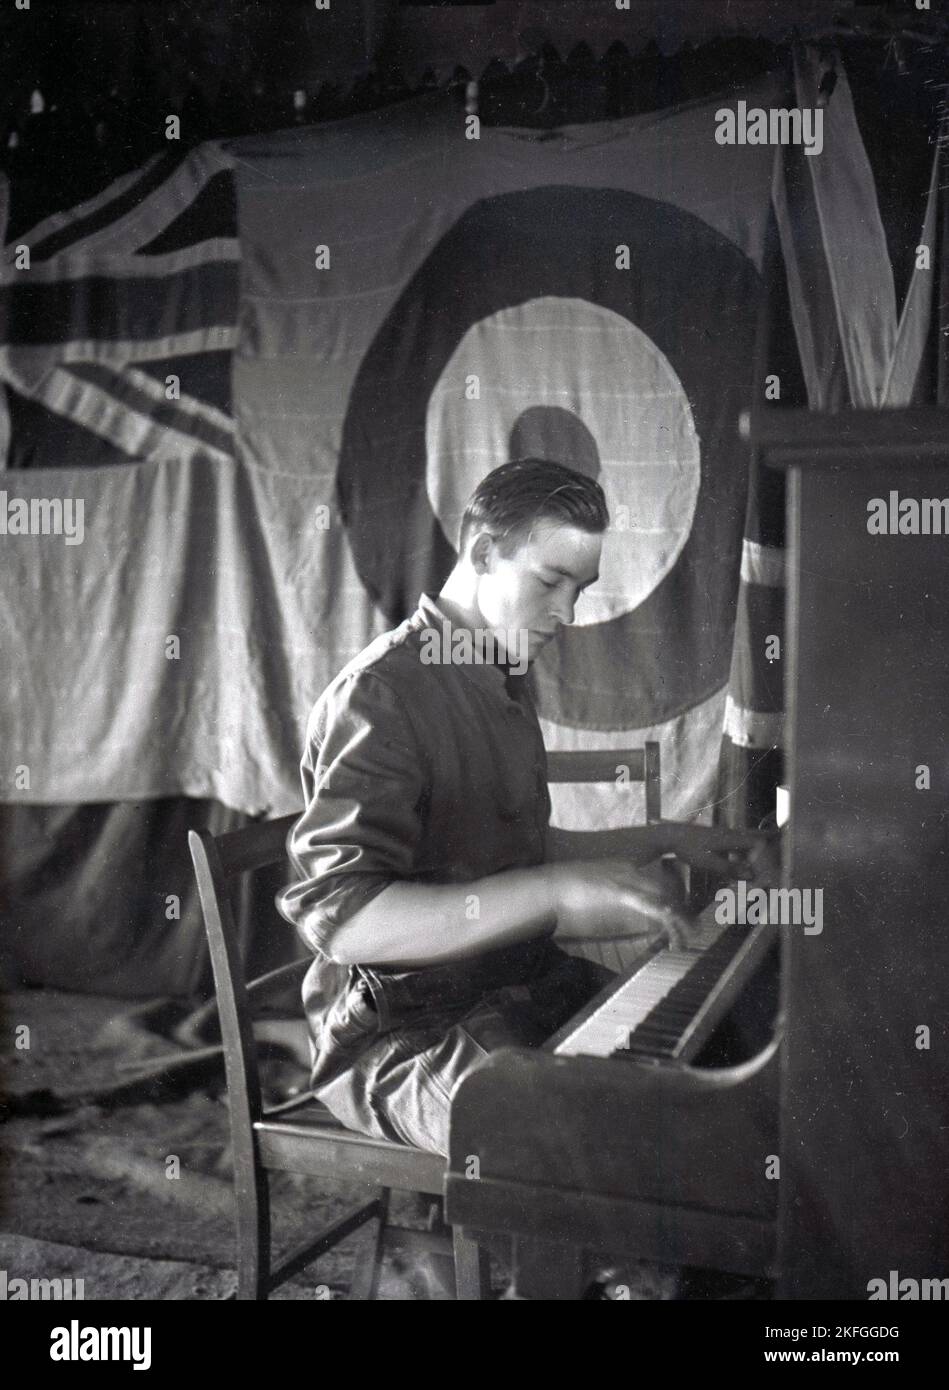 1948, historique, un aviateur britannique assis au piano à Longford Camp, RAF Ternhiill, Market Drayton, Shropshire, Angleterre, ROYAUME-UNI. Une toile de fond suspendue sur la scène a un logo union Jack et la cocarde de la RAF, introduite pour la première fois avec le Royal Flying corps lors de la première Guerre mondiale. Banque D'Images